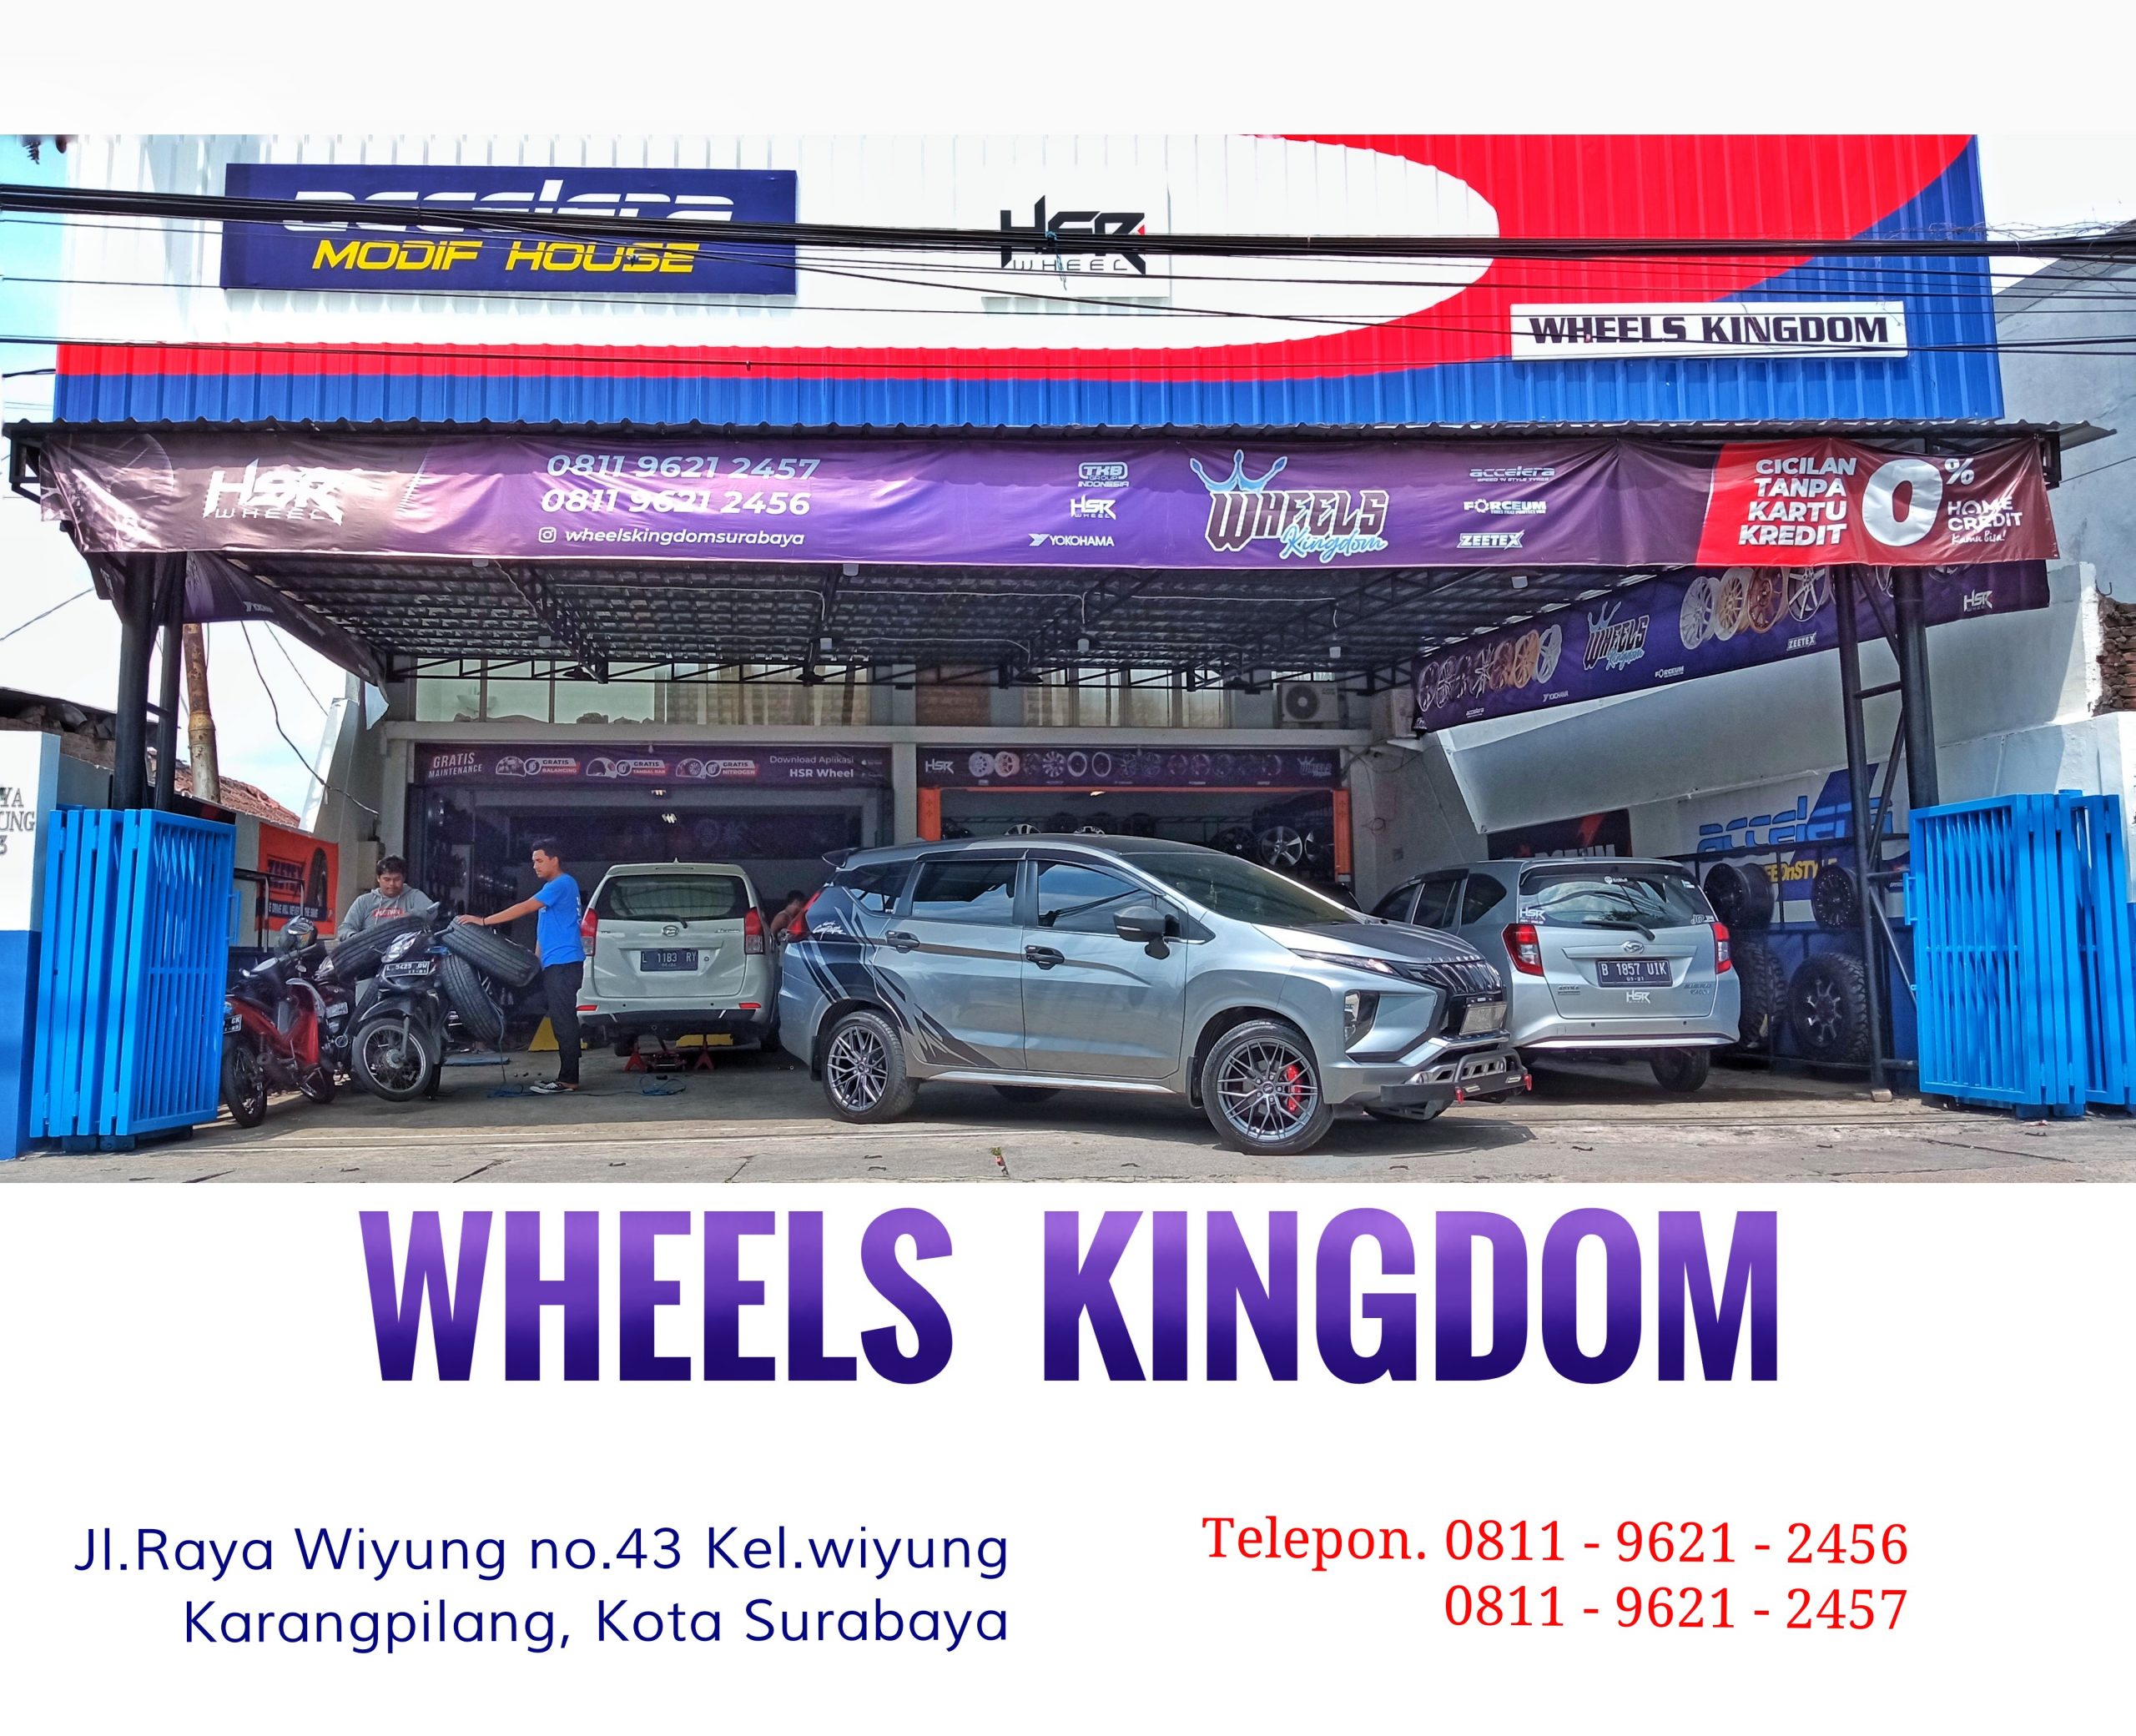 Pusat jual beli velg mobil berkualitas di surabaya | Wheels kingdom